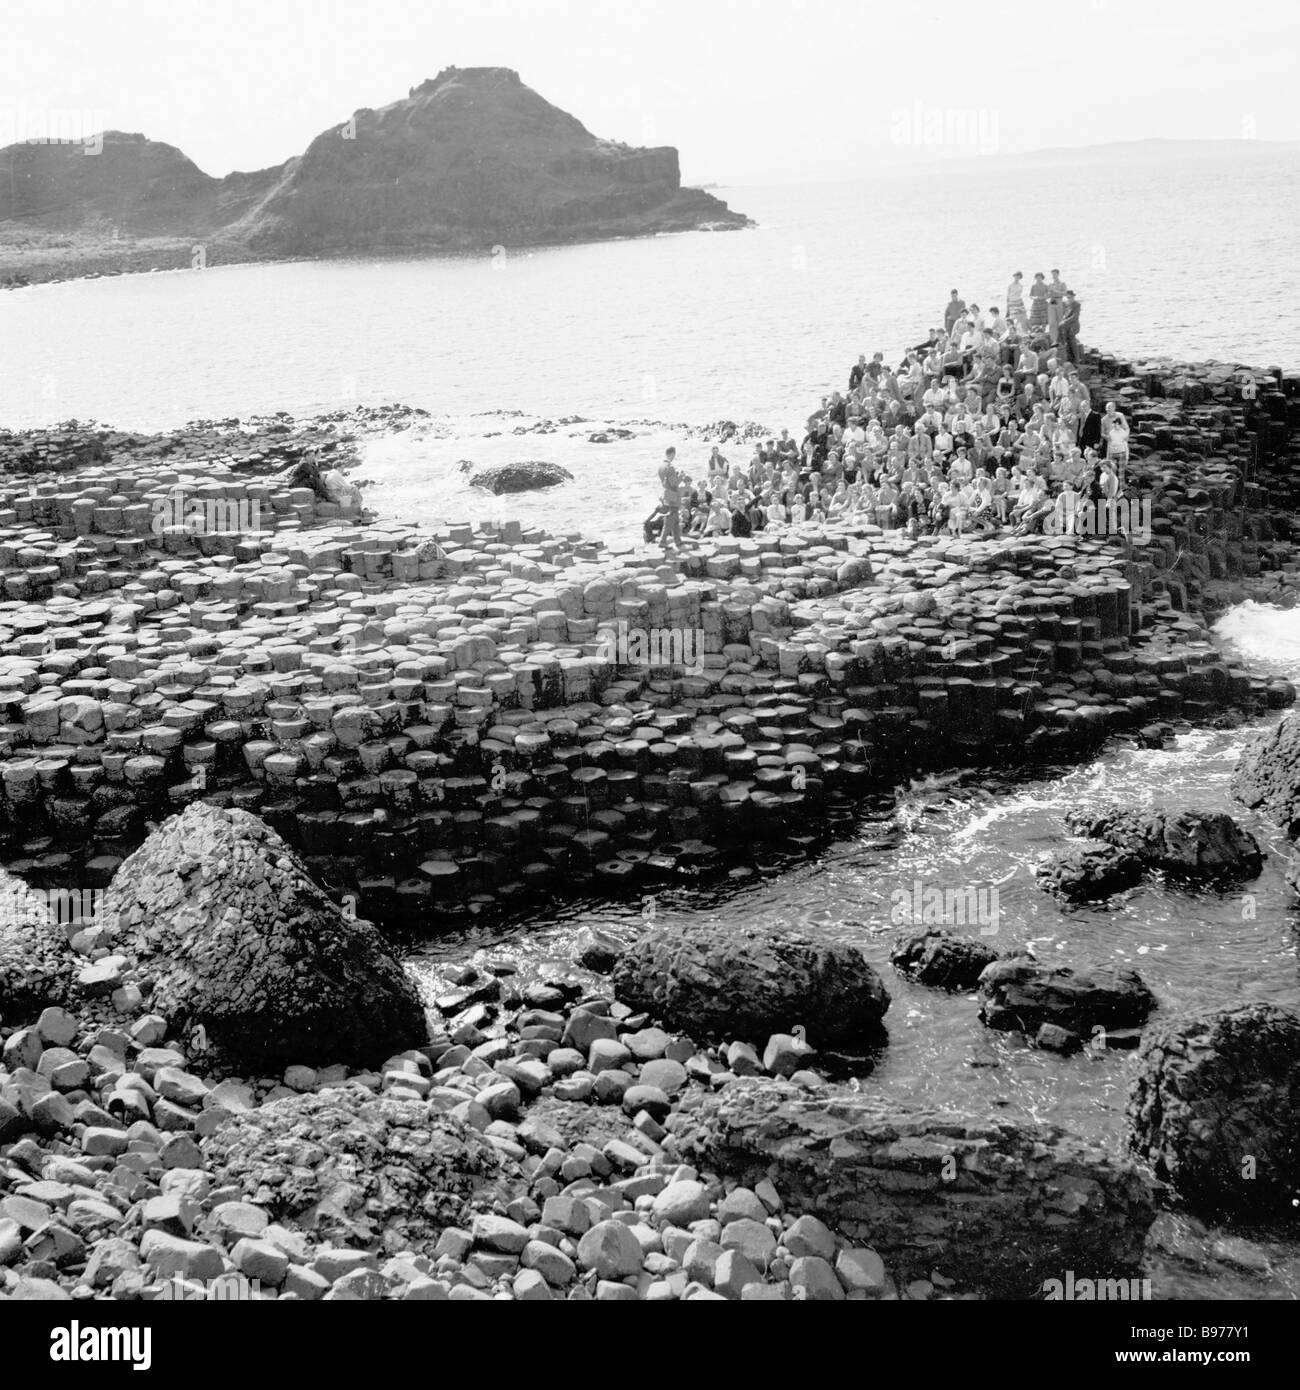 Années 1950, historique, un groupe de personnes sur l'anciennes formations rocheuses, les colonnes de basalte, à la fameuse Chaussée des Géants, en Irlande du Nord. Banque D'Images